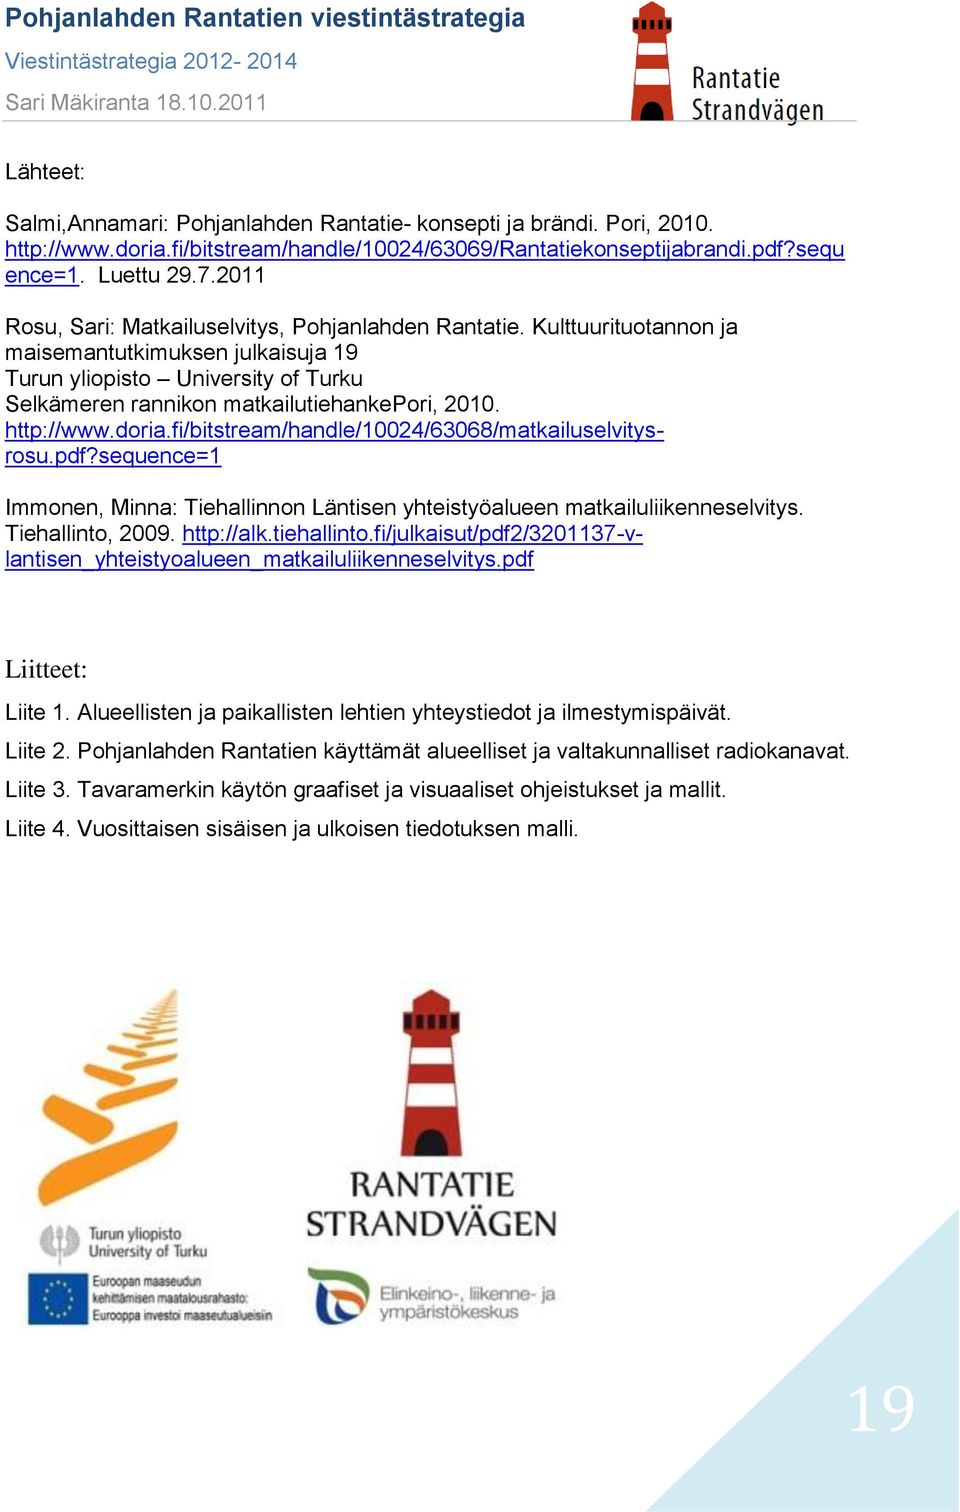 http://www.doria.fi/bitstream/handle/10024/63068/matkailuselvitysrosu.pdf?sequence=1 Immonen, Minna: Tiehallinnon Läntisen yhteistyöalueen matkailuliikenneselvitys. Tiehallinto, 2009. http://alk.